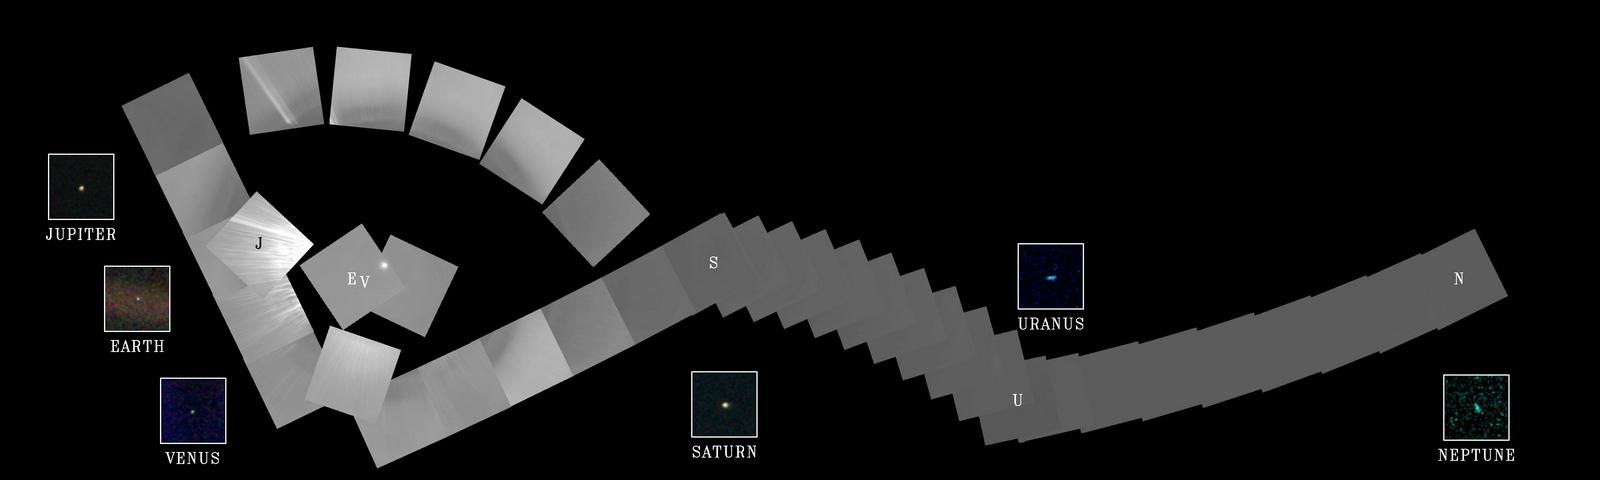 Družinski album Osončja, kot ga je pred desetletji posnel Voyager 1.  Foto: Nasa/JPL